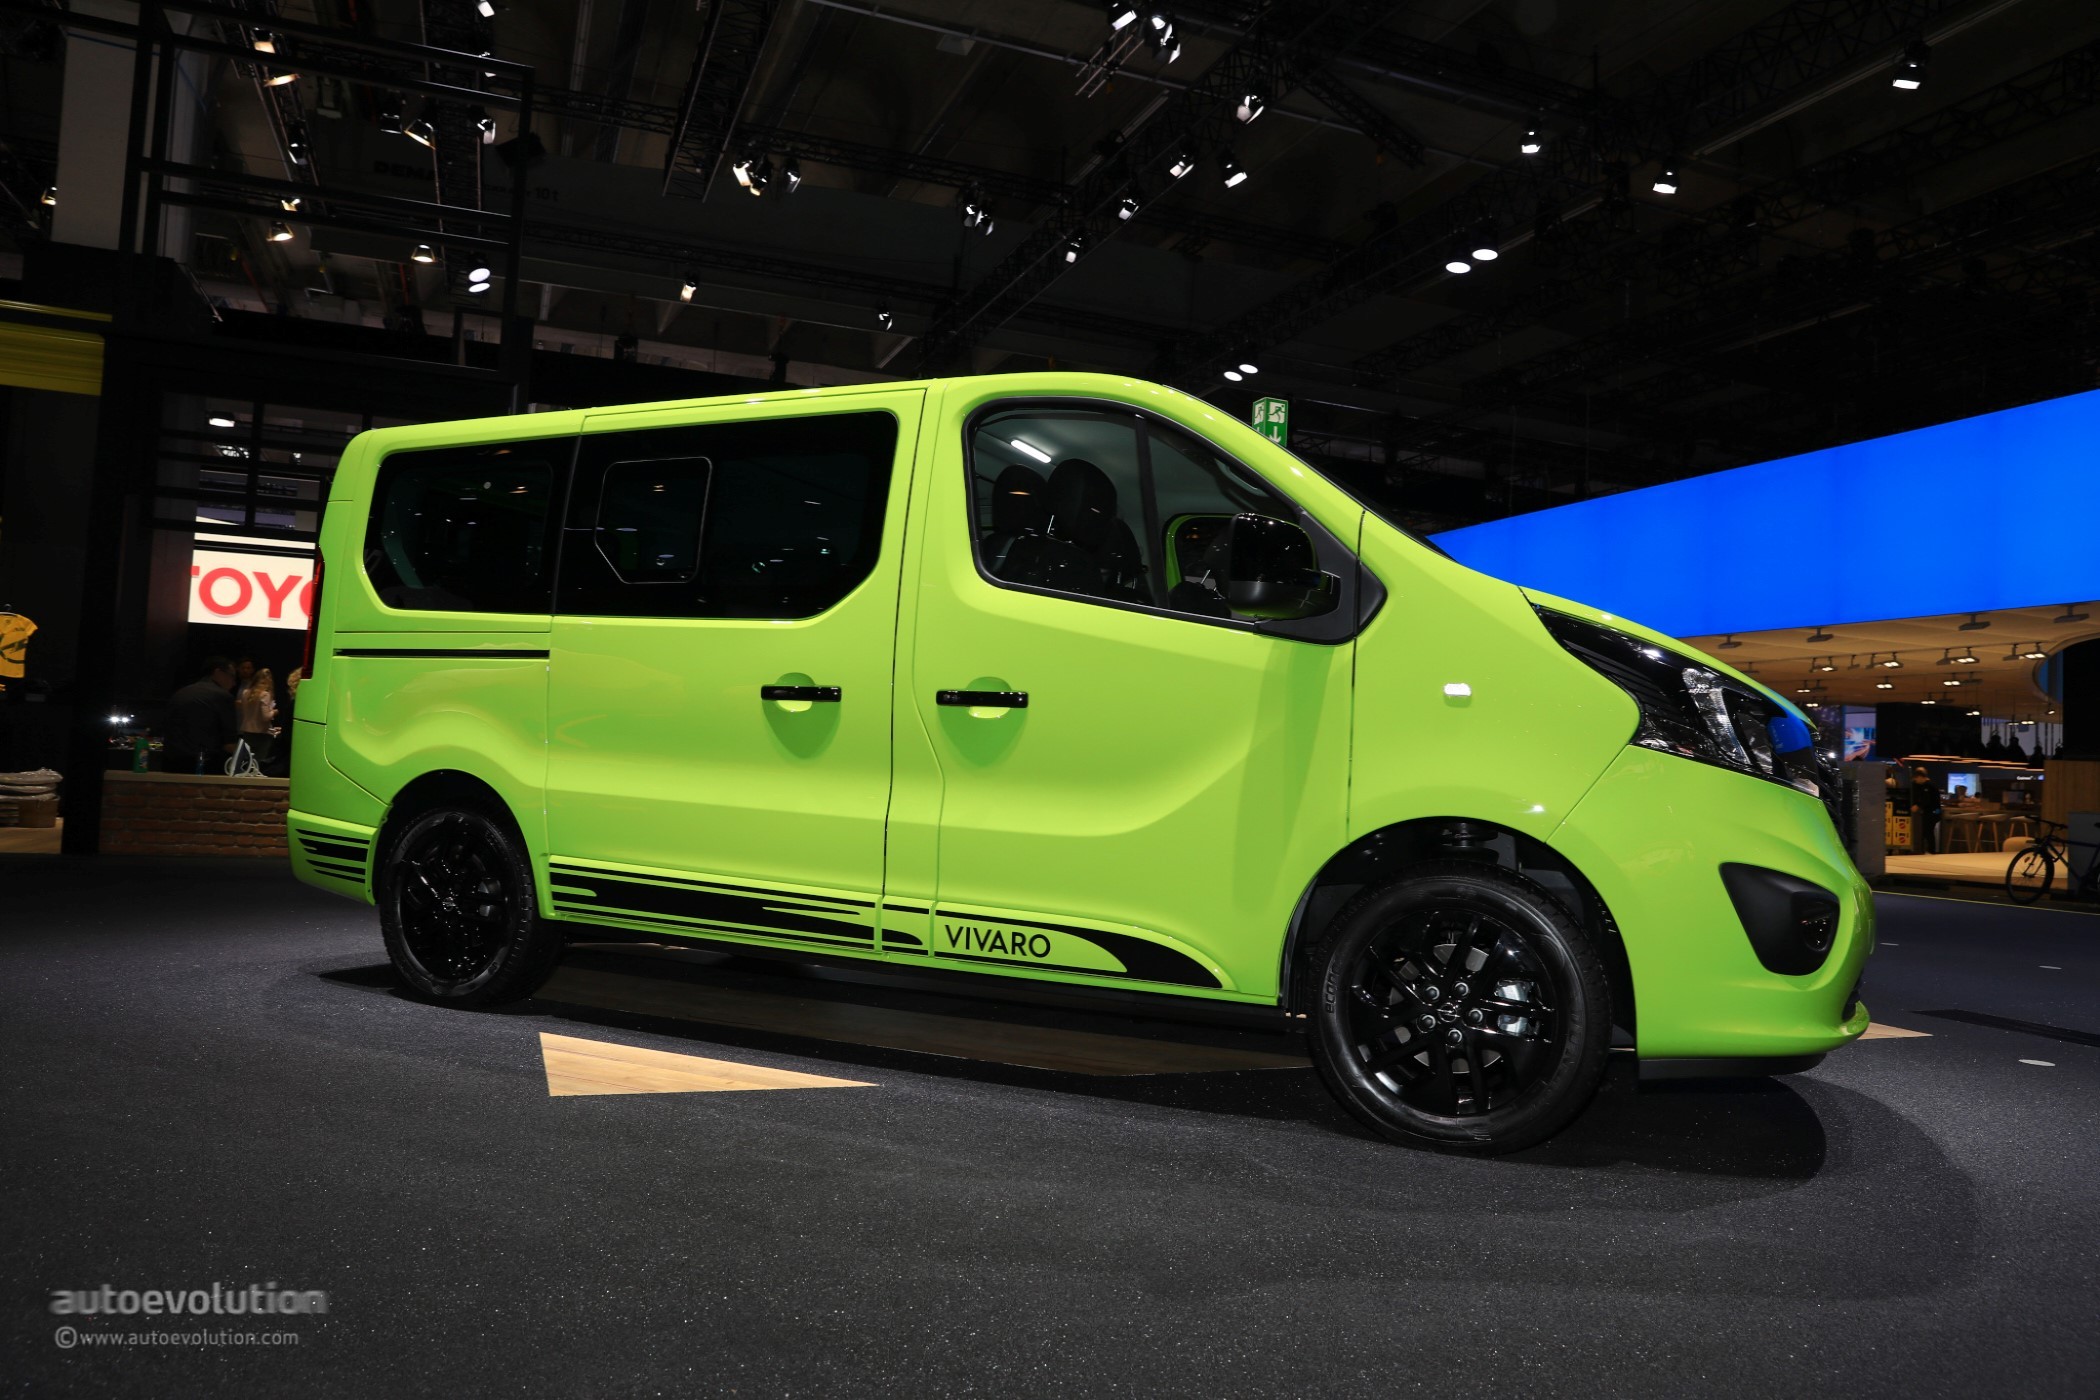 Registratie Toepassing Uitmaken Opel Vivaro Life Makes Camper Vans Look Cool In Frankfurt - autoevolution